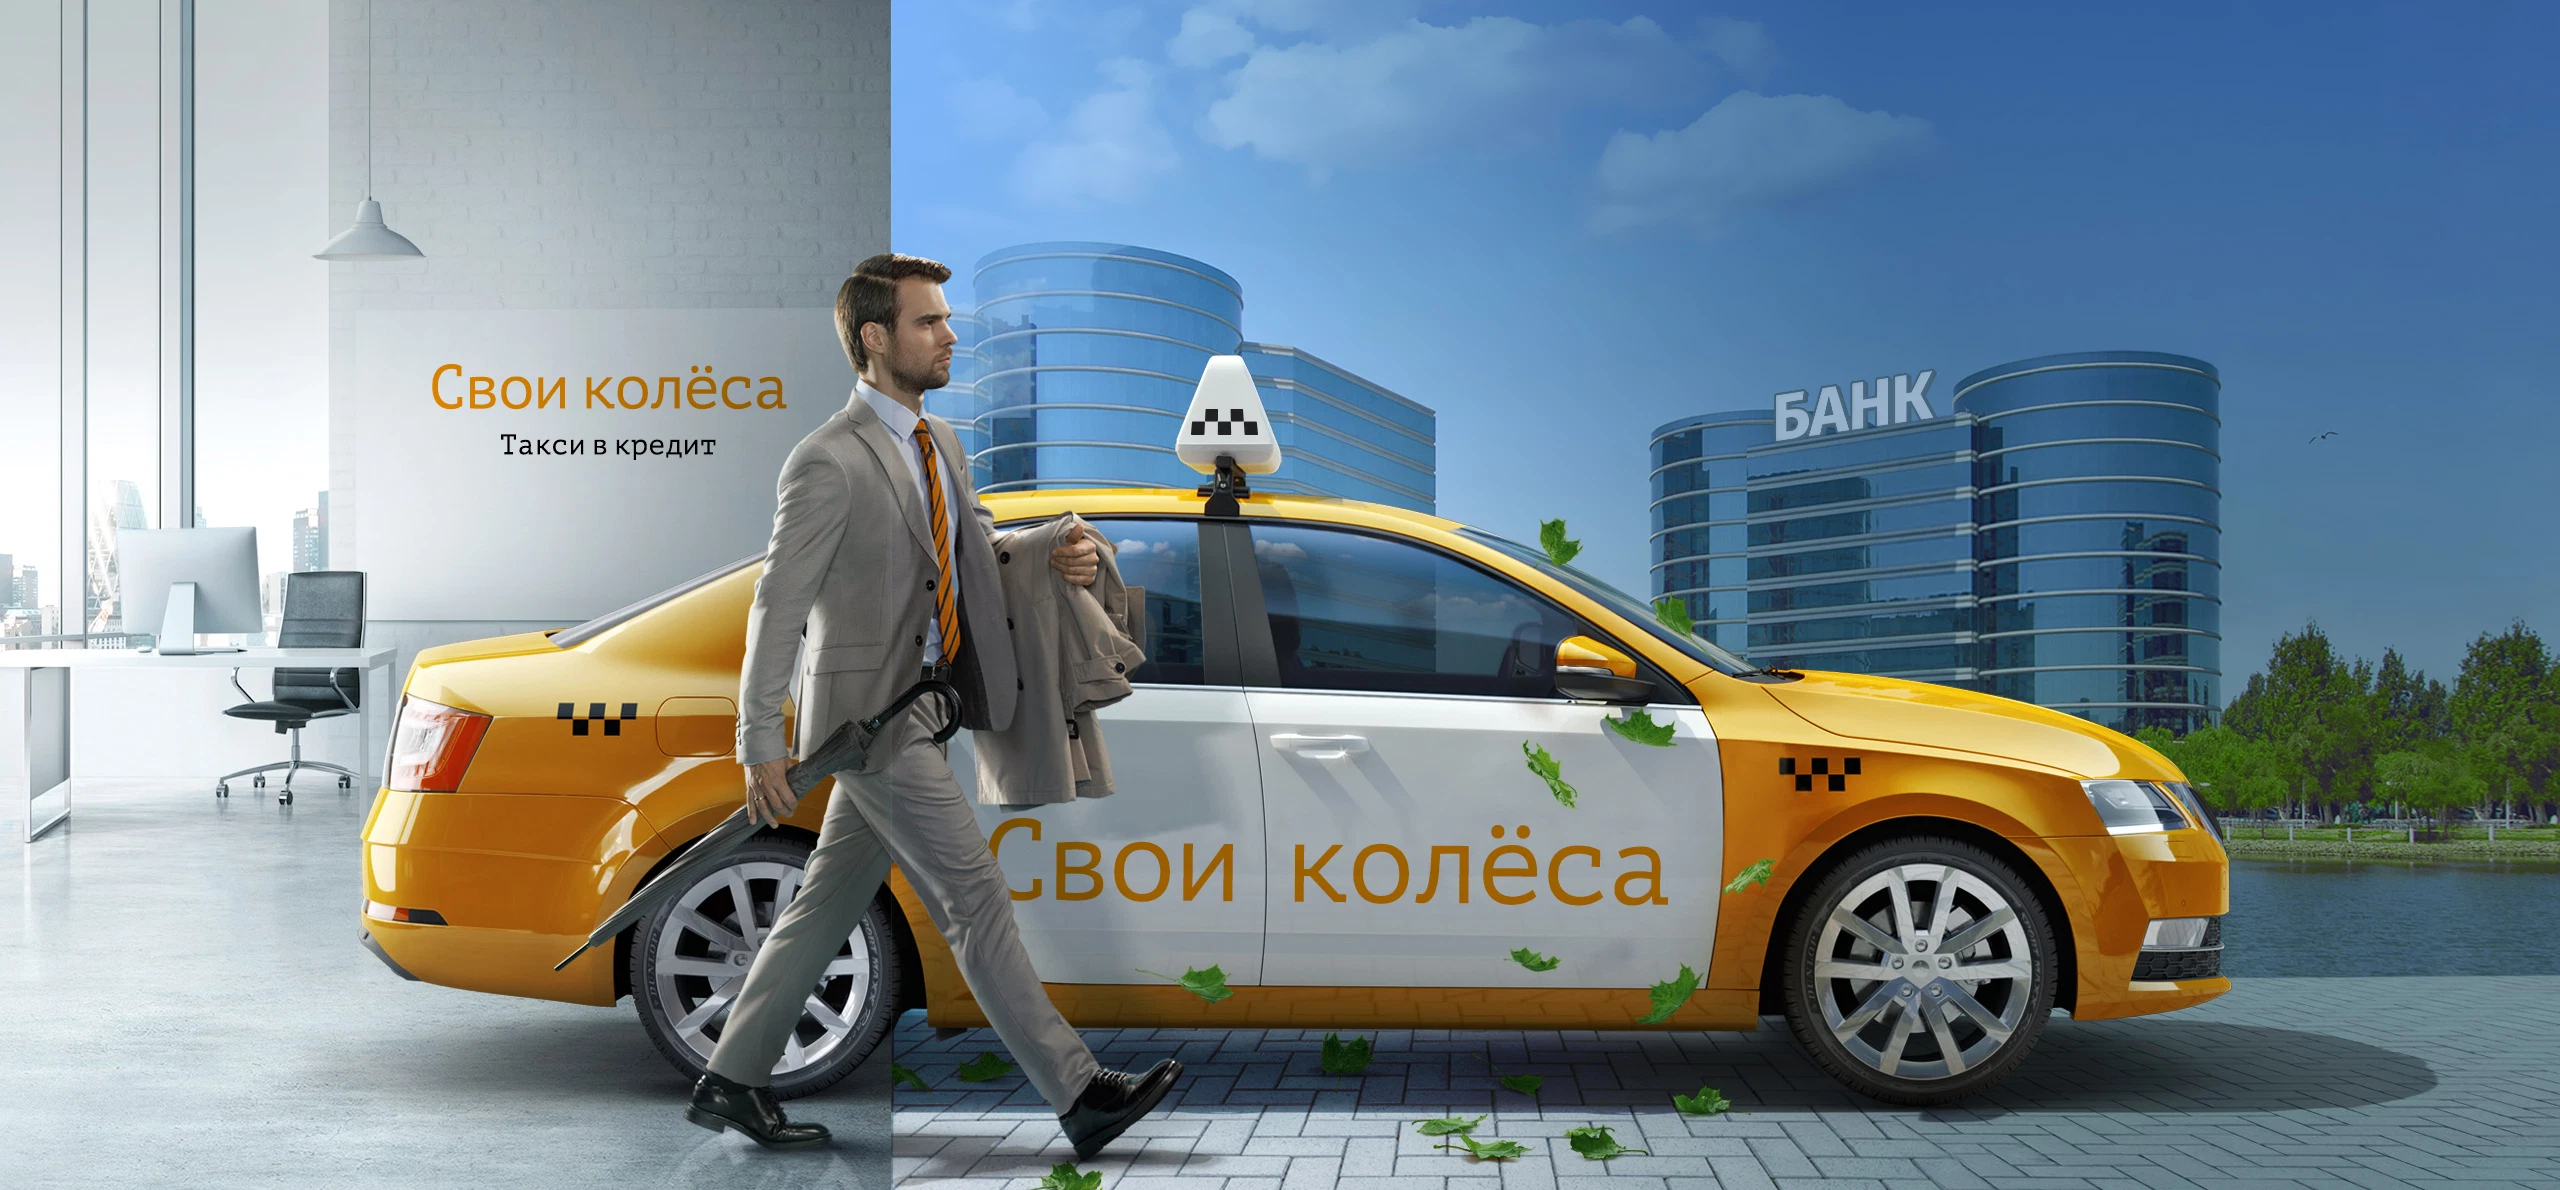 «Такси в кредит» — Škoda Octavia — «Свои колёса»